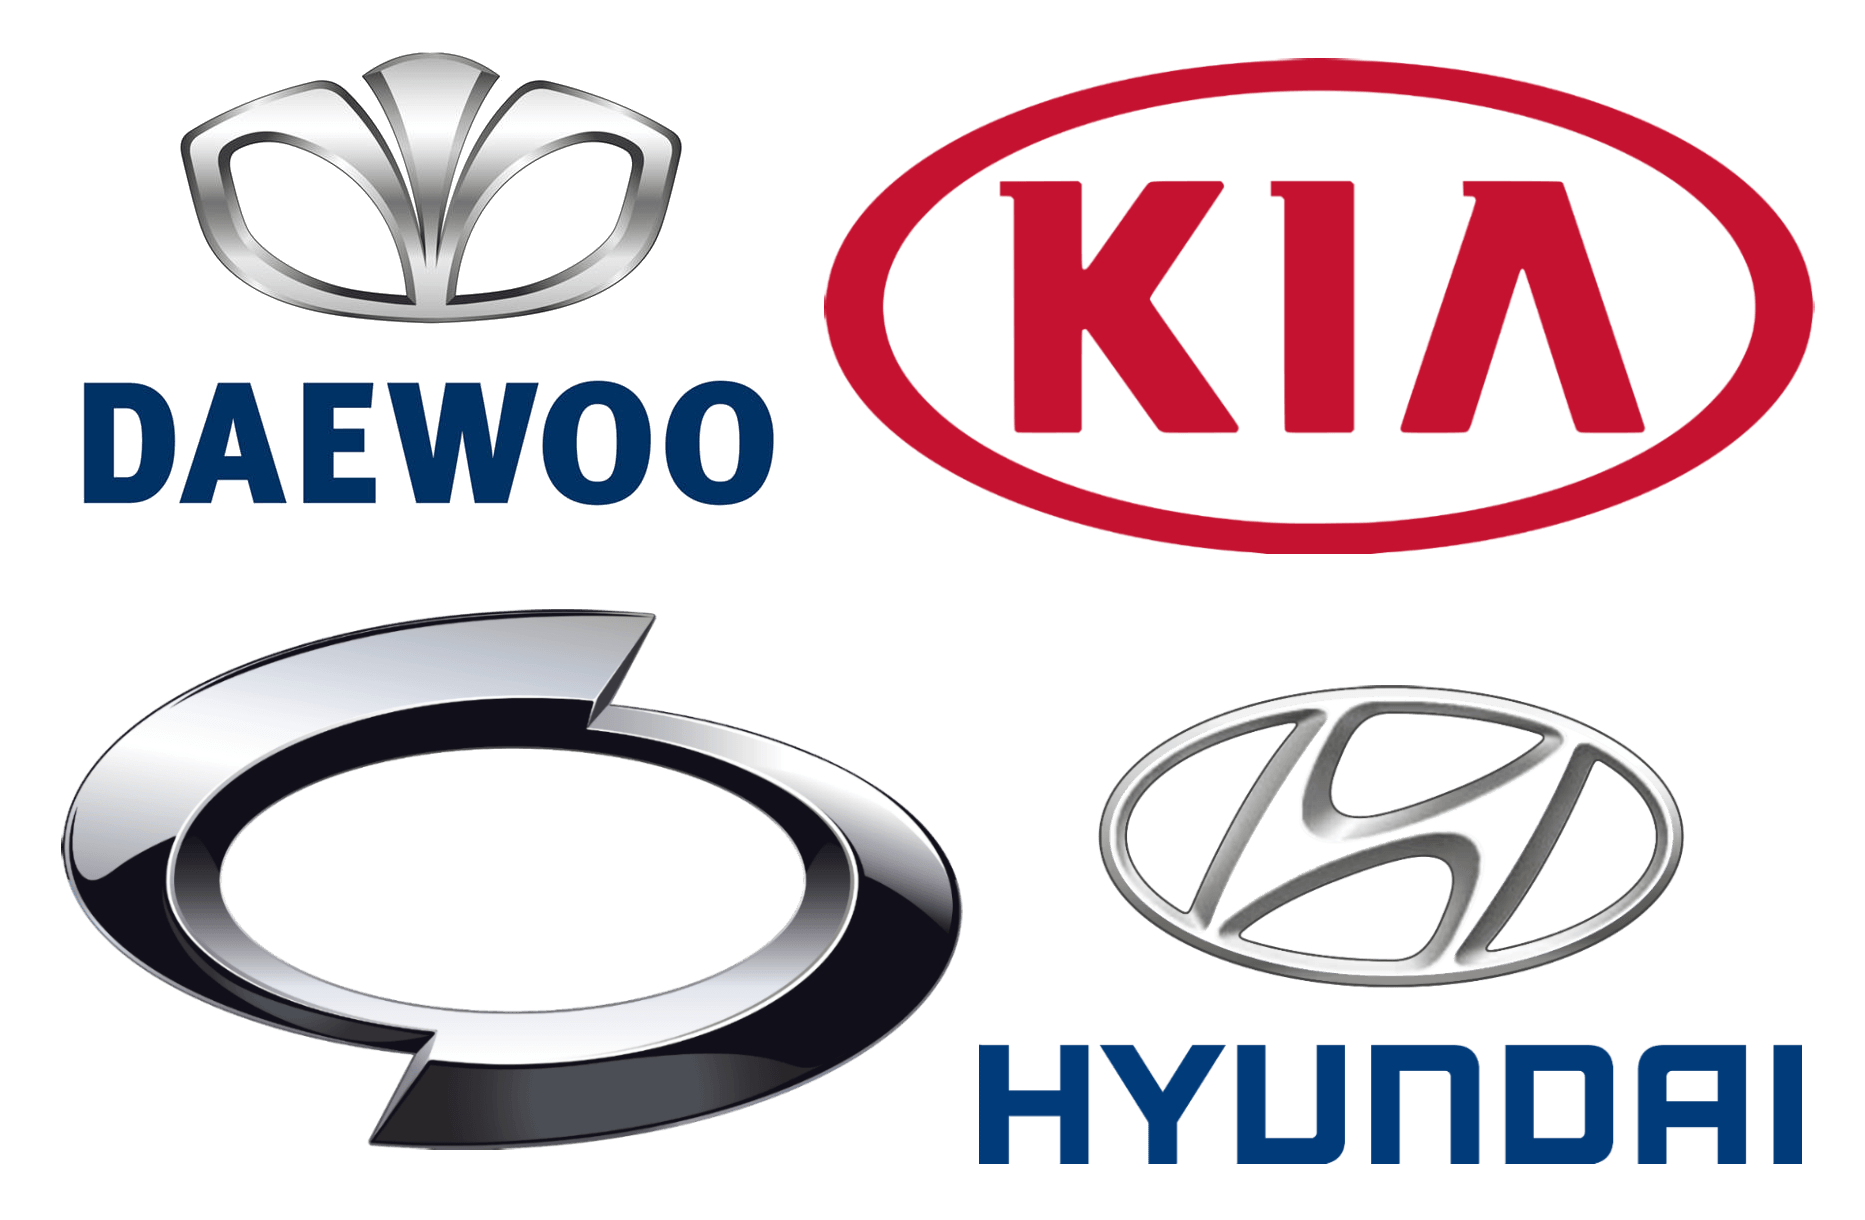 Korean Car Logo - Korean Car Brands, Companies and Manufacturers | Car Brand Names.com